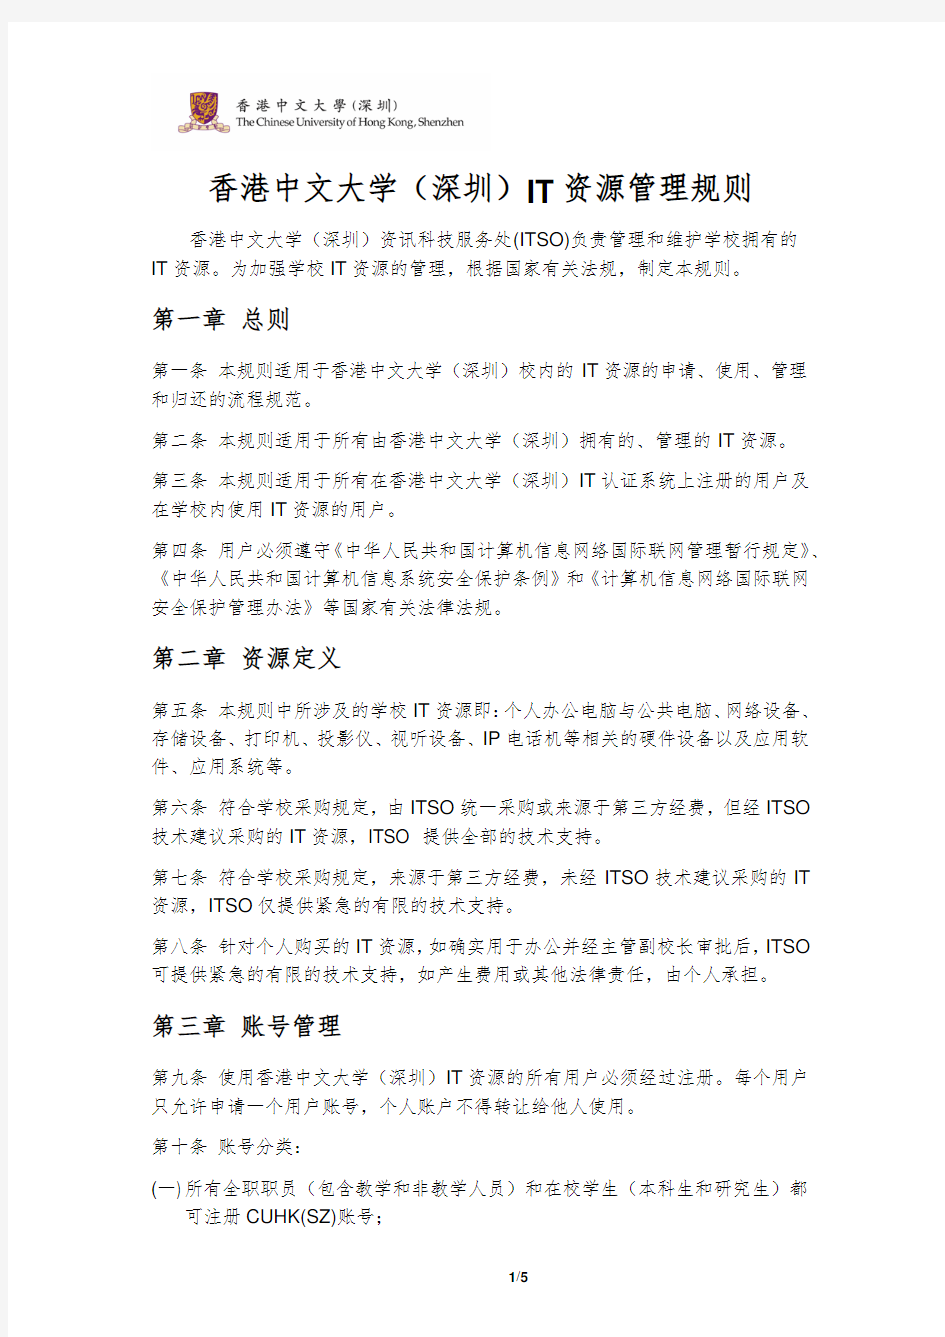 香港中文大学(深圳)IT资源管理规则